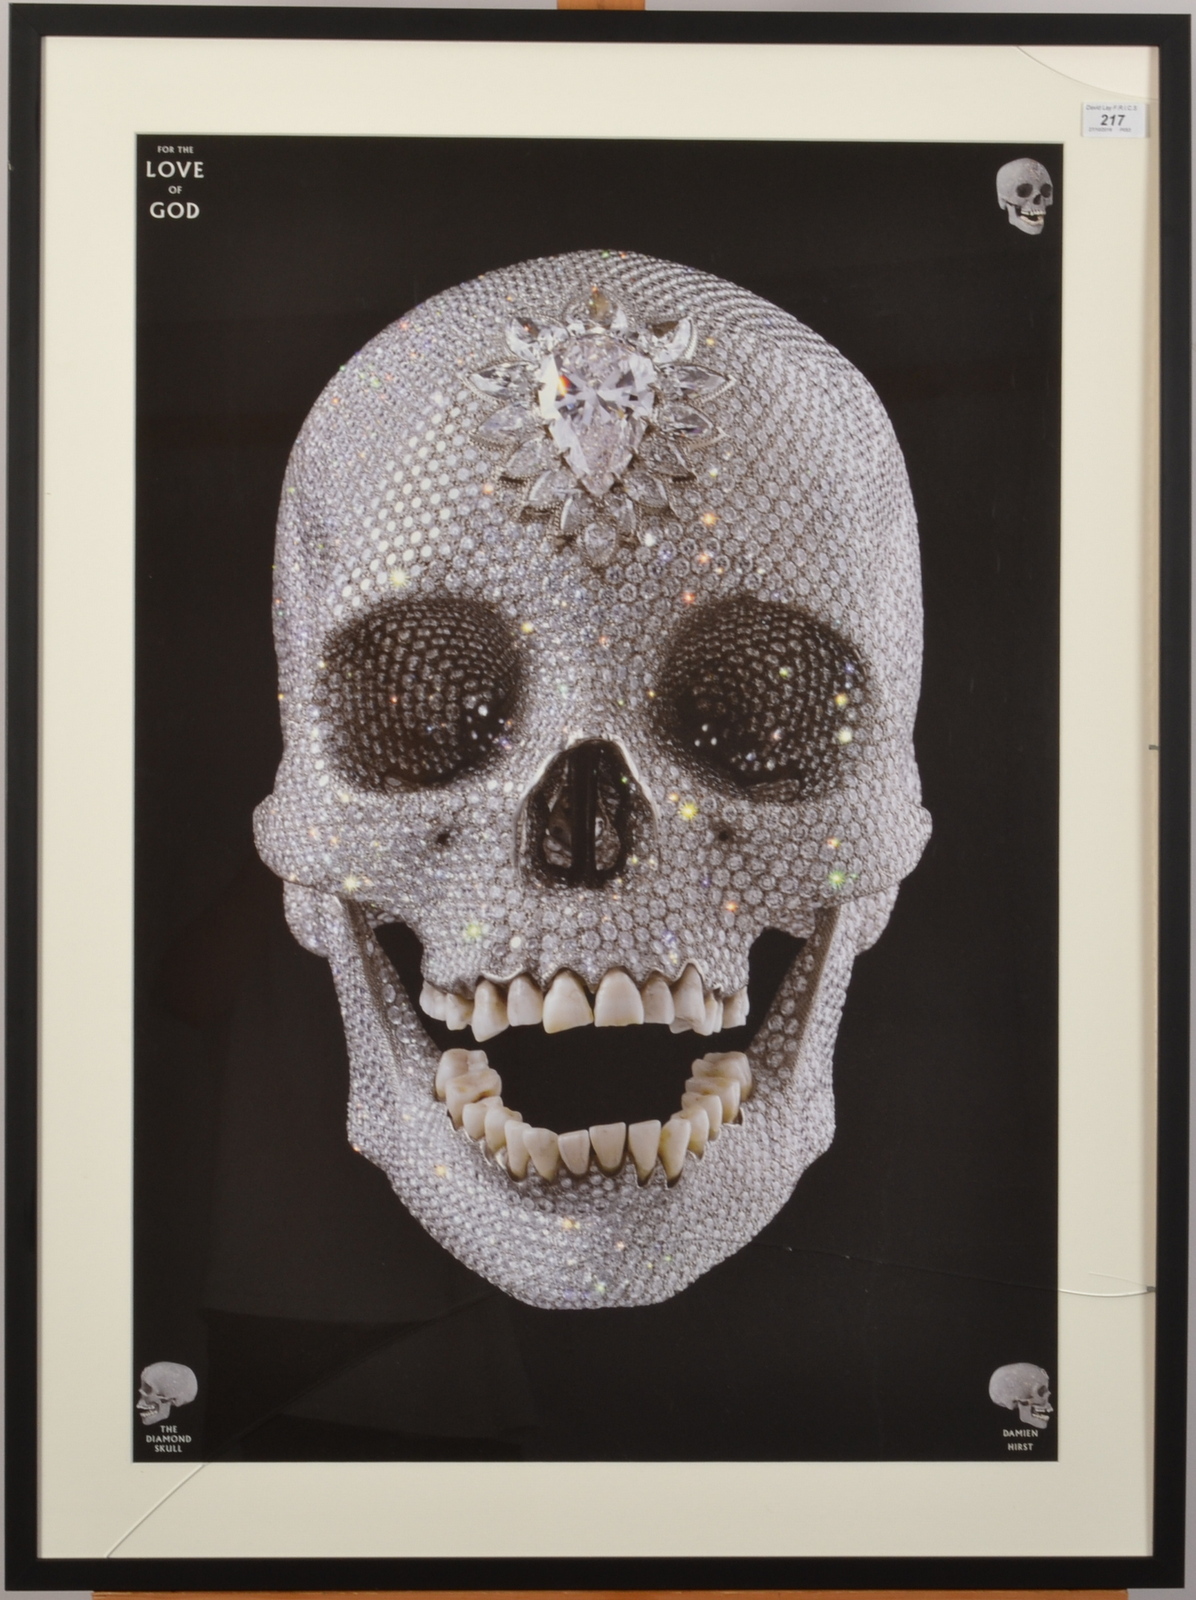 DAMIEN HURST The Diamond Skull Poster - Image 2 of 2